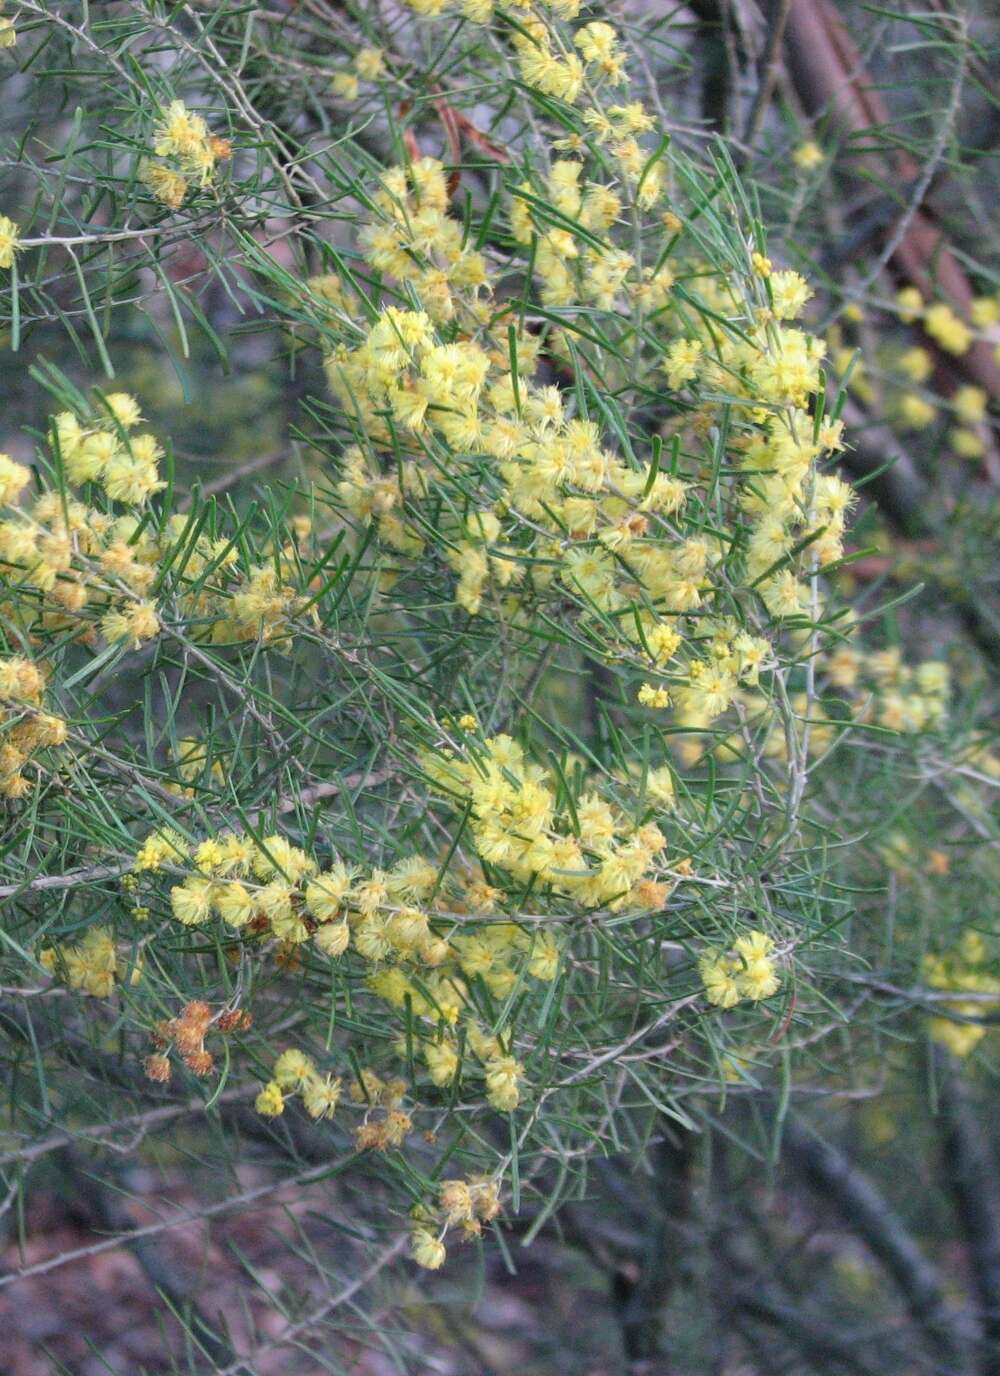 Acacia flexifolia A. Cunn. ex Benth.的圖片